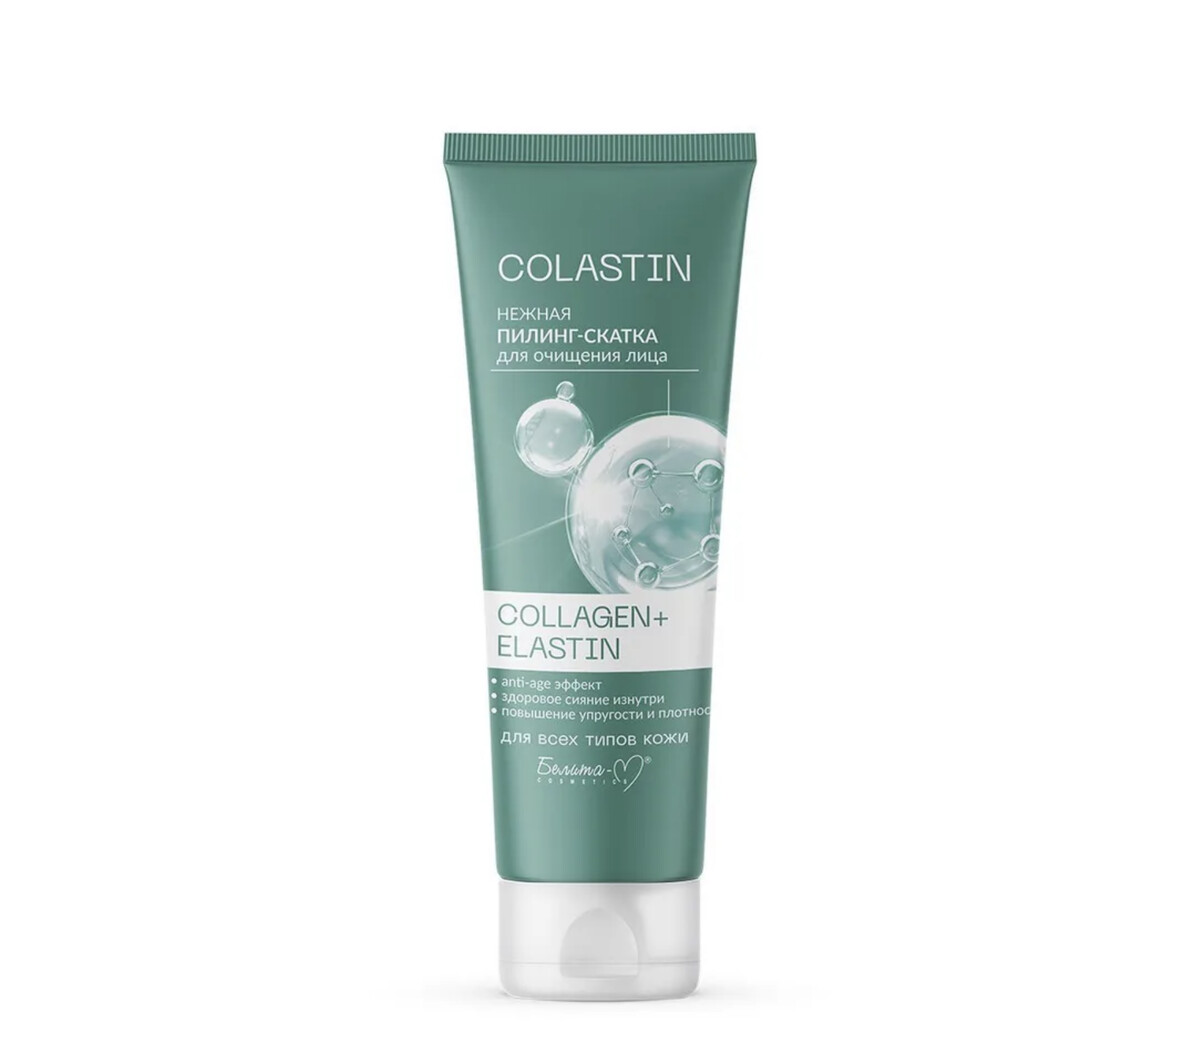 Colastin пилинг-скатка для очищения лица нежная collagen+elastin 75г colastin гель пенка для лица очищающая collagen elastin 200г